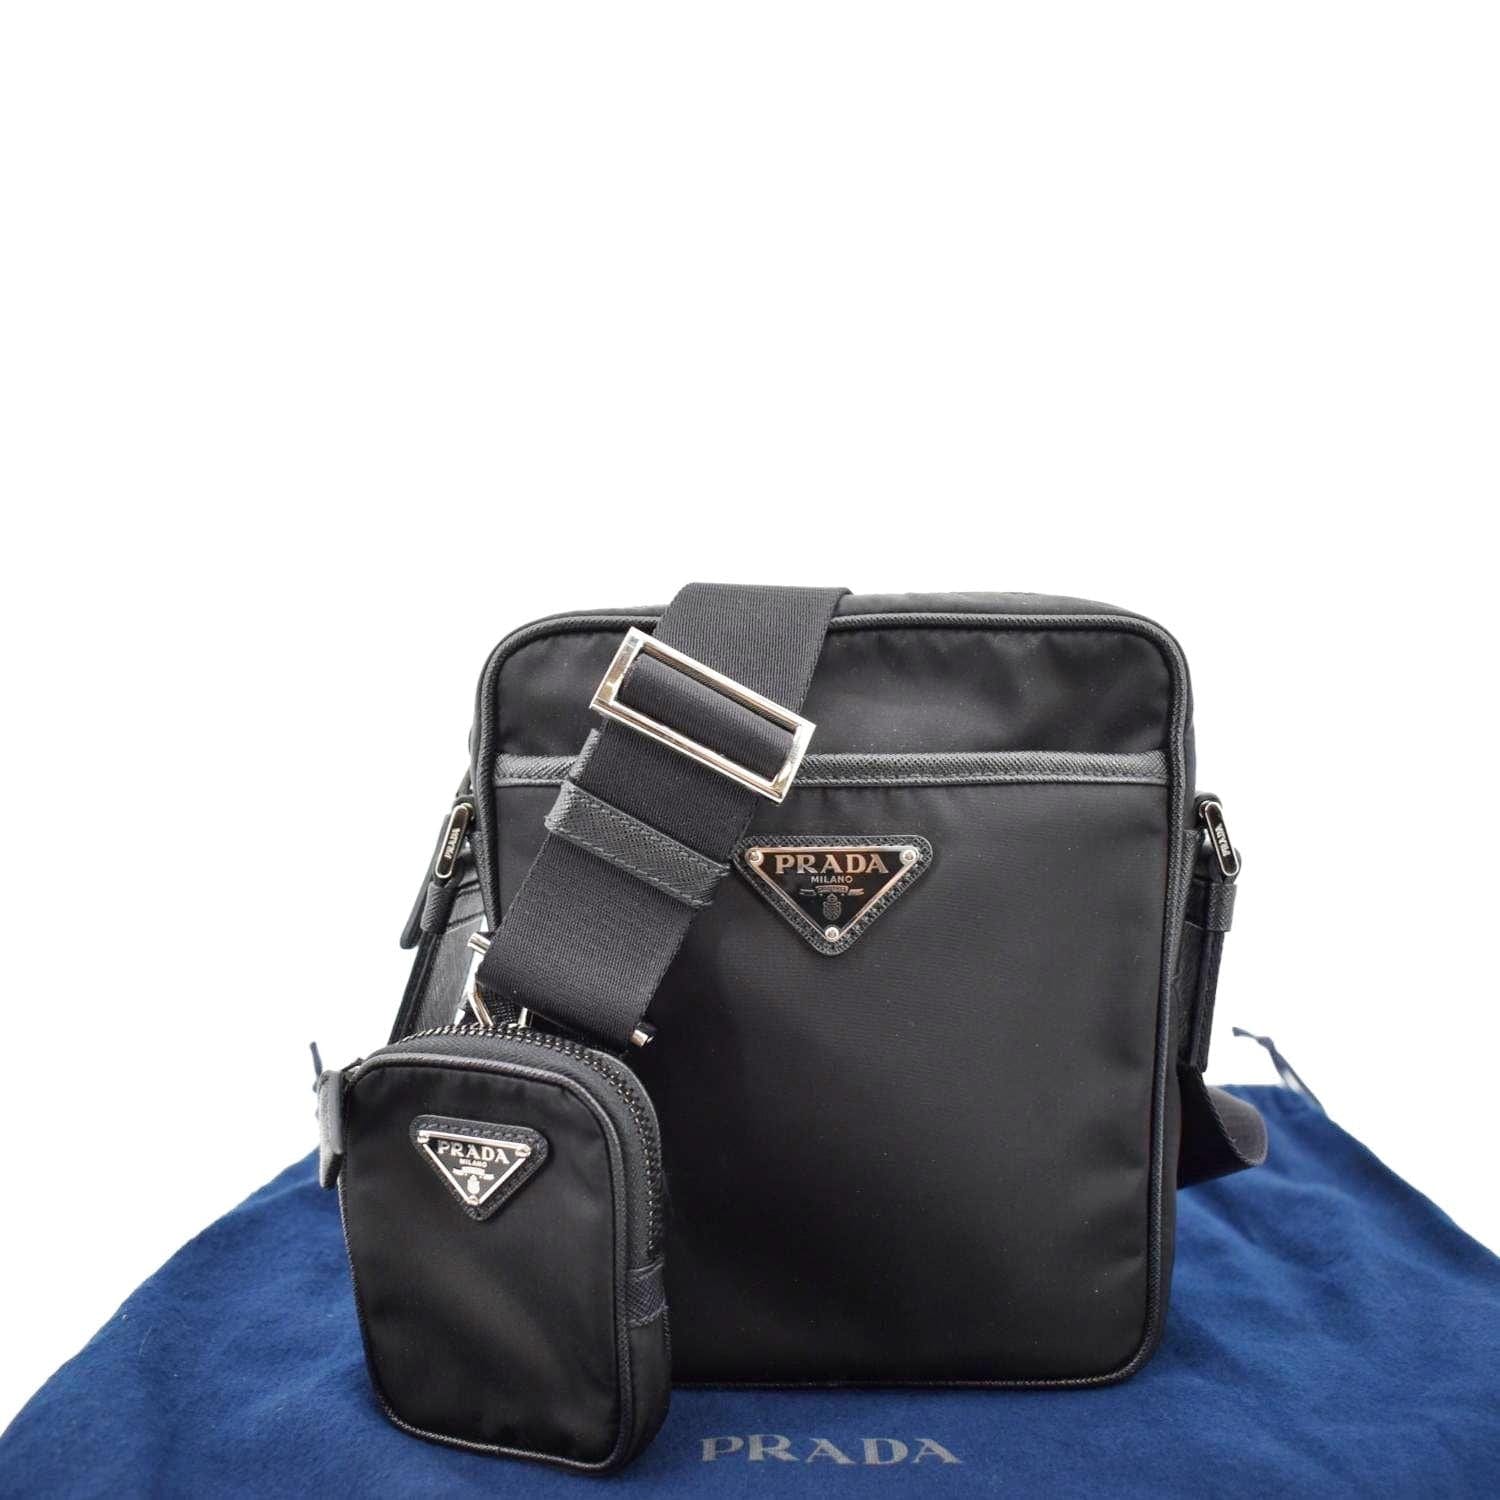 Prada Black Re-Nylon And Saffiano Leather Shoulder Bag Prada